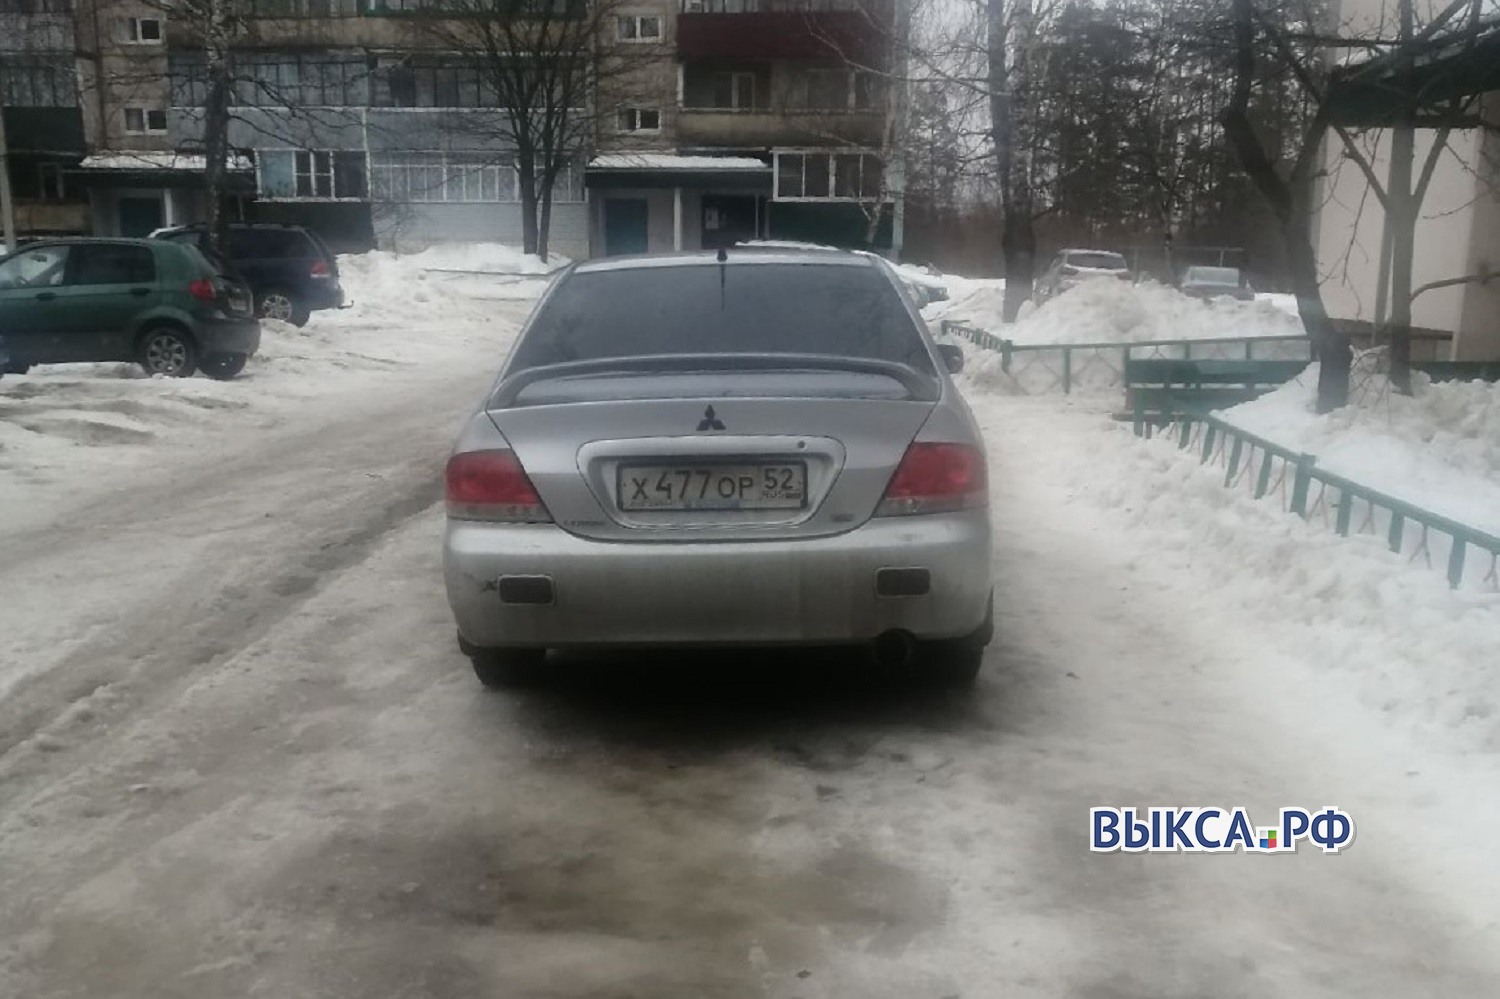 Автомобилисты перекрыли тротуар в микрорайоне Жуковского